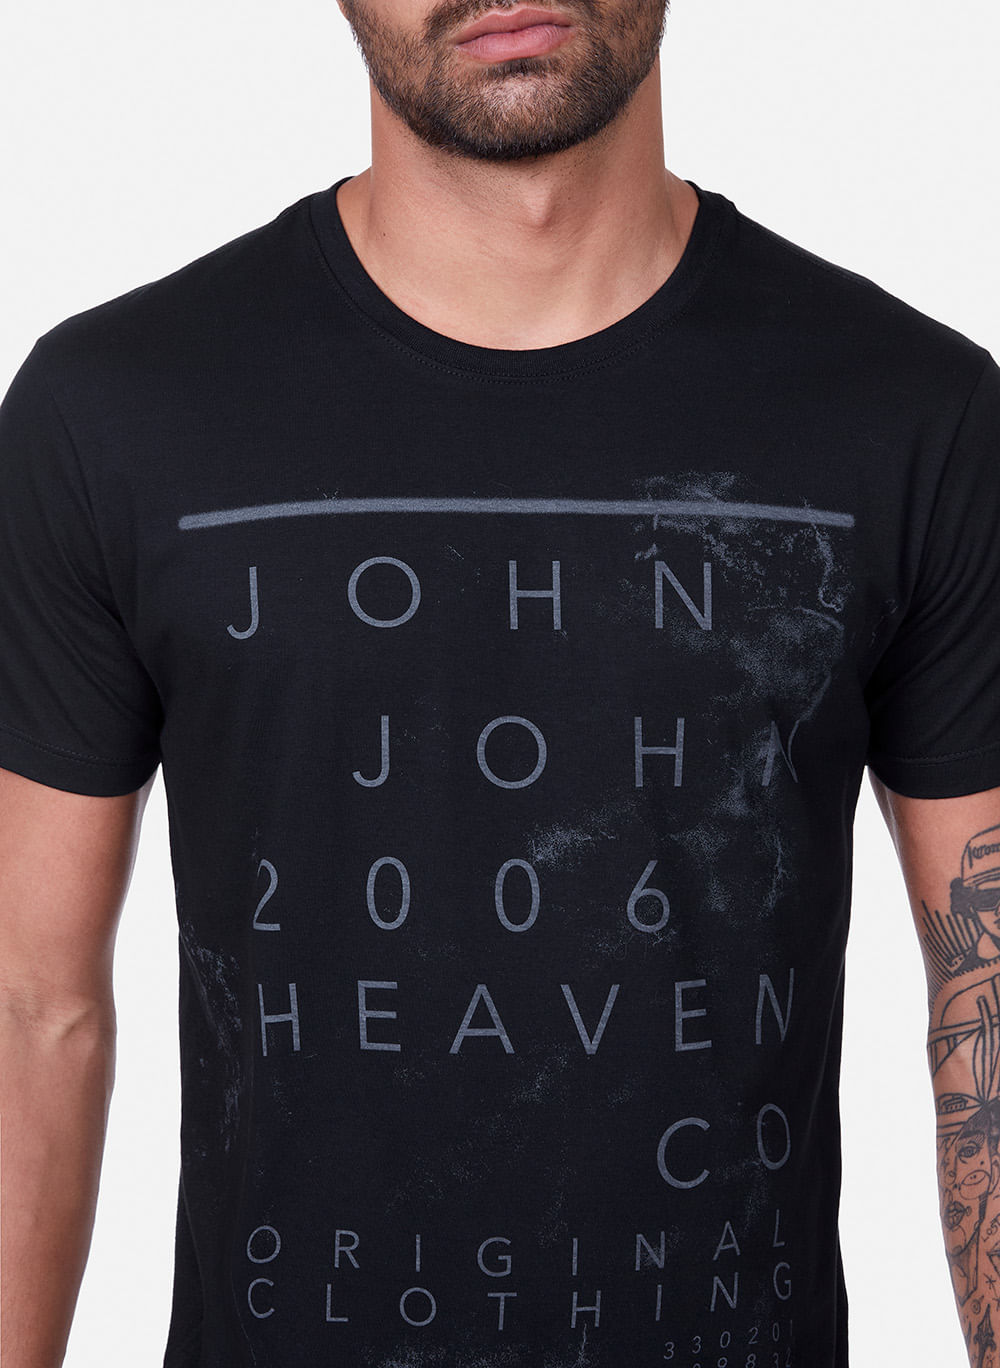 Camiseta John John Masculina Slim Original Preta - Faz a Boa!